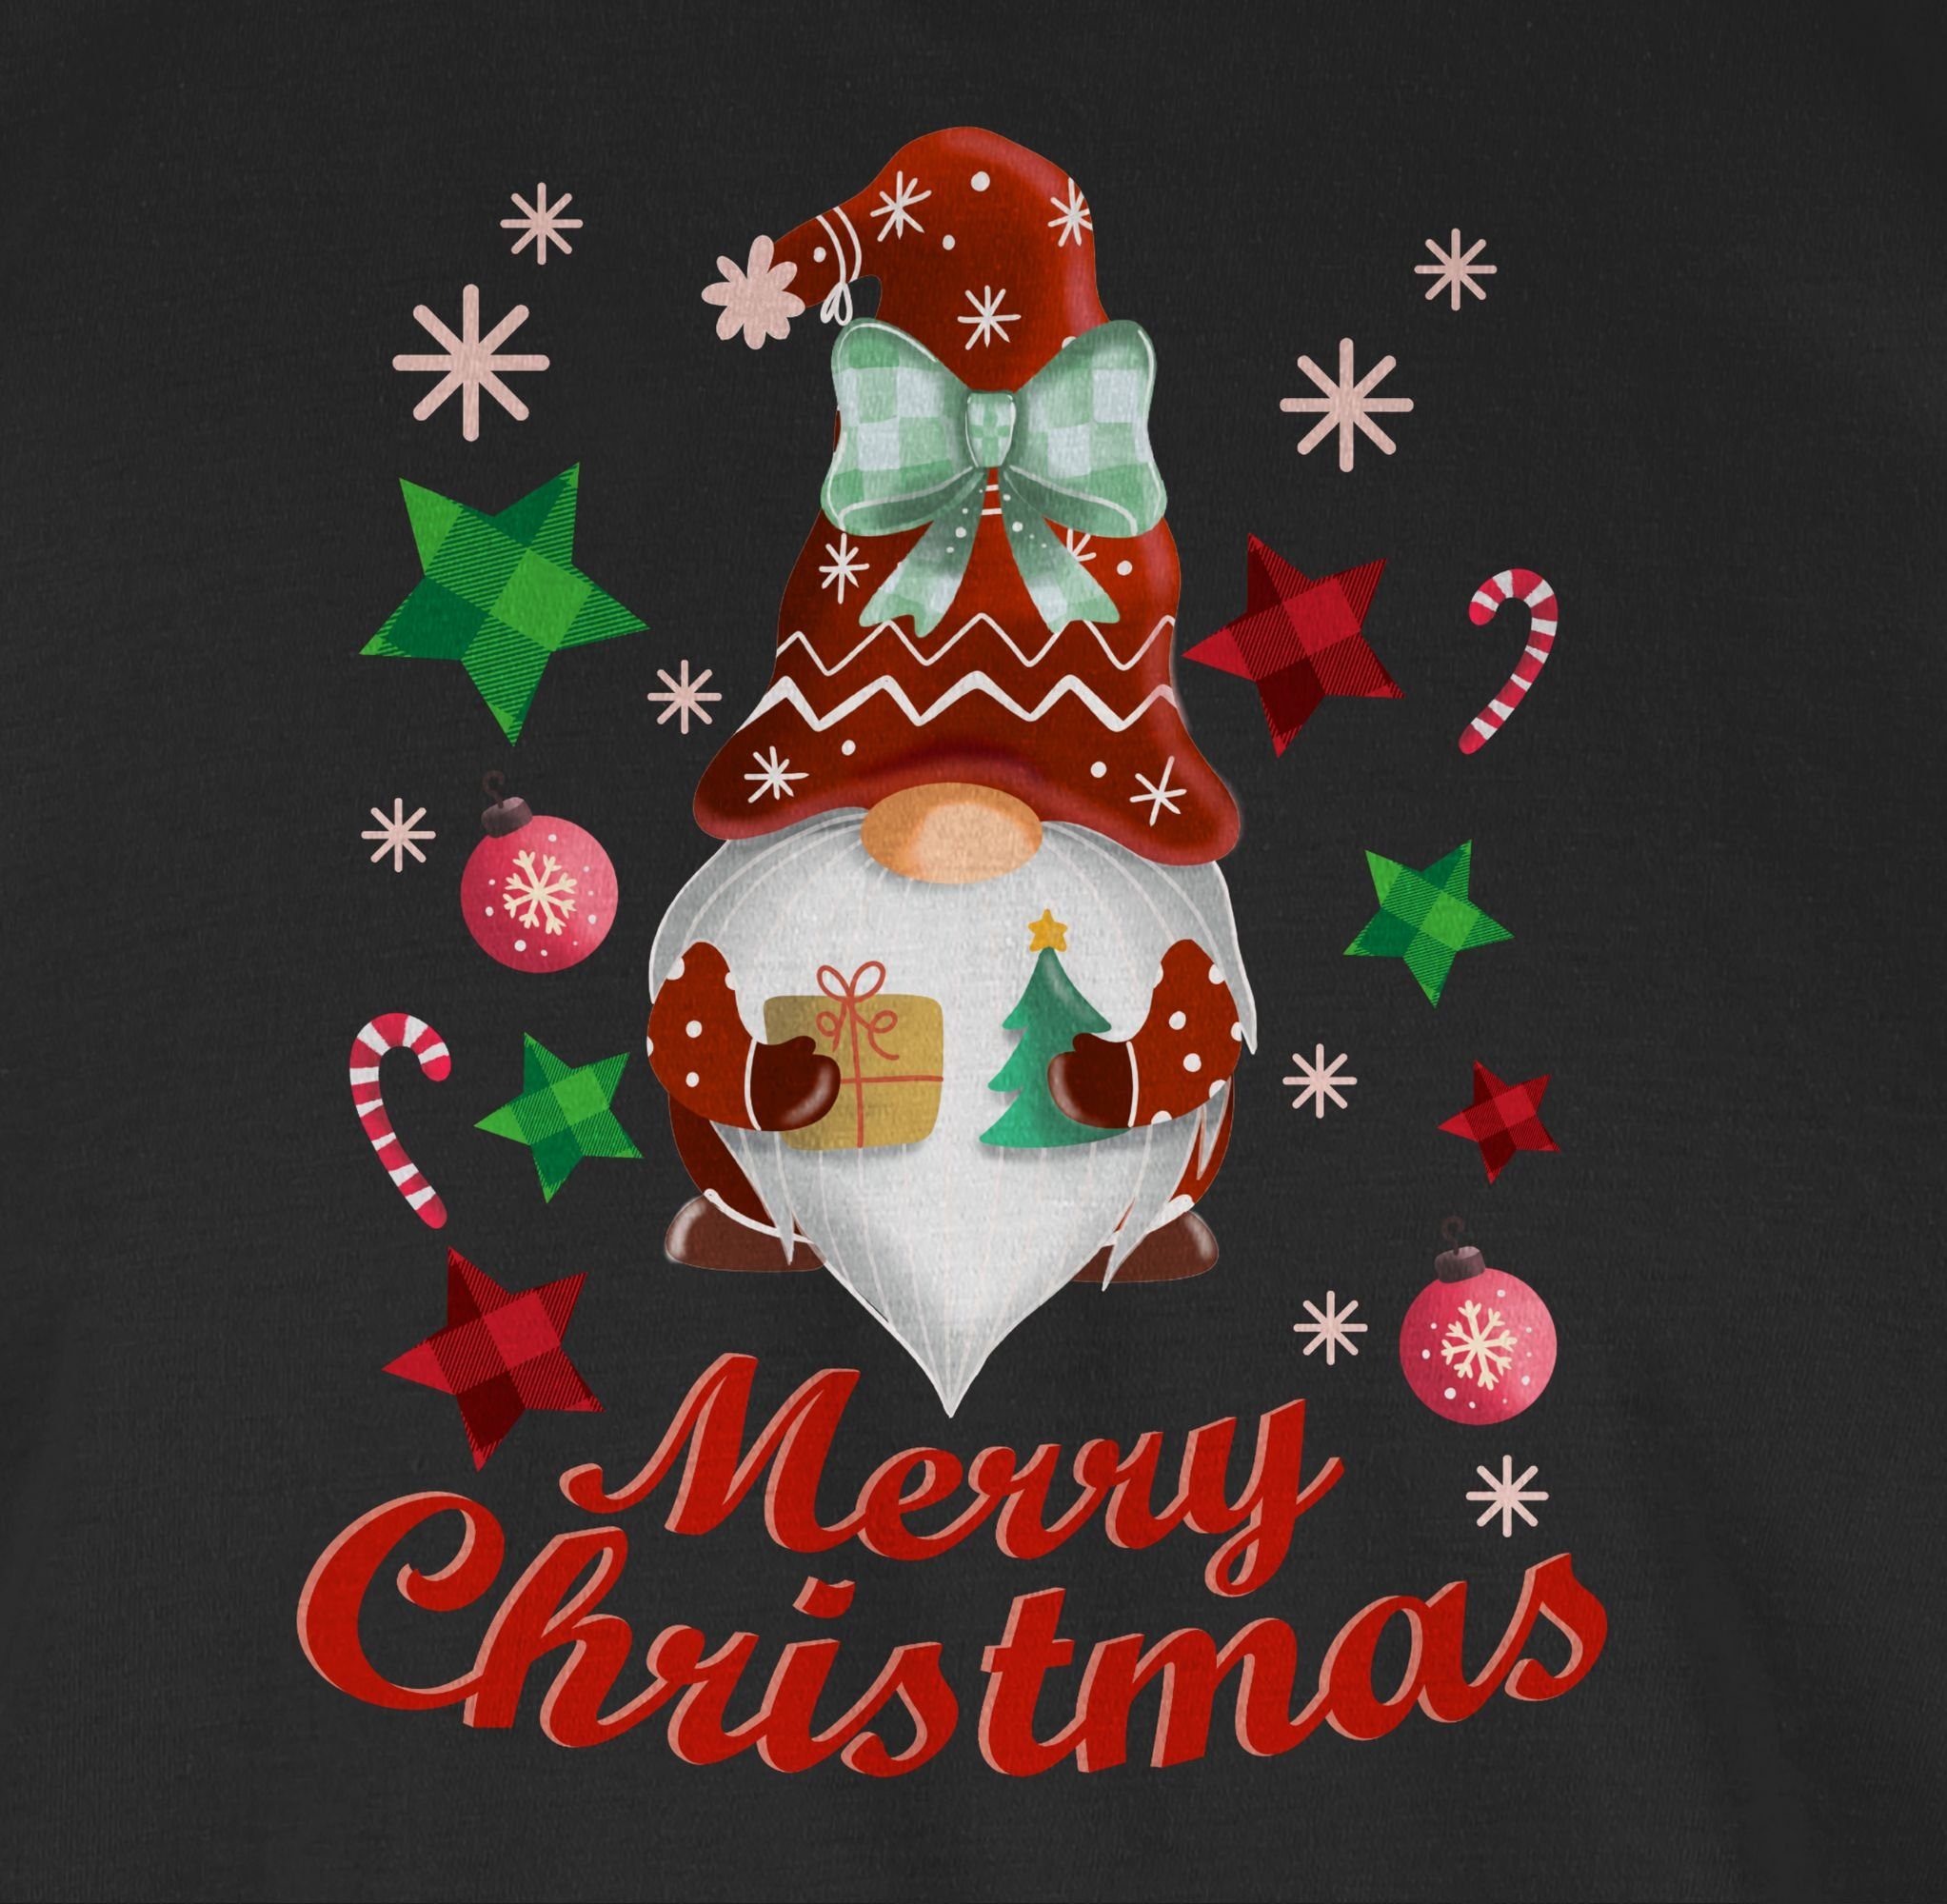 Schwarz Weihnachtlicher Weihachten Shirtracer Kleidung T-Shirt 01 Wichtel